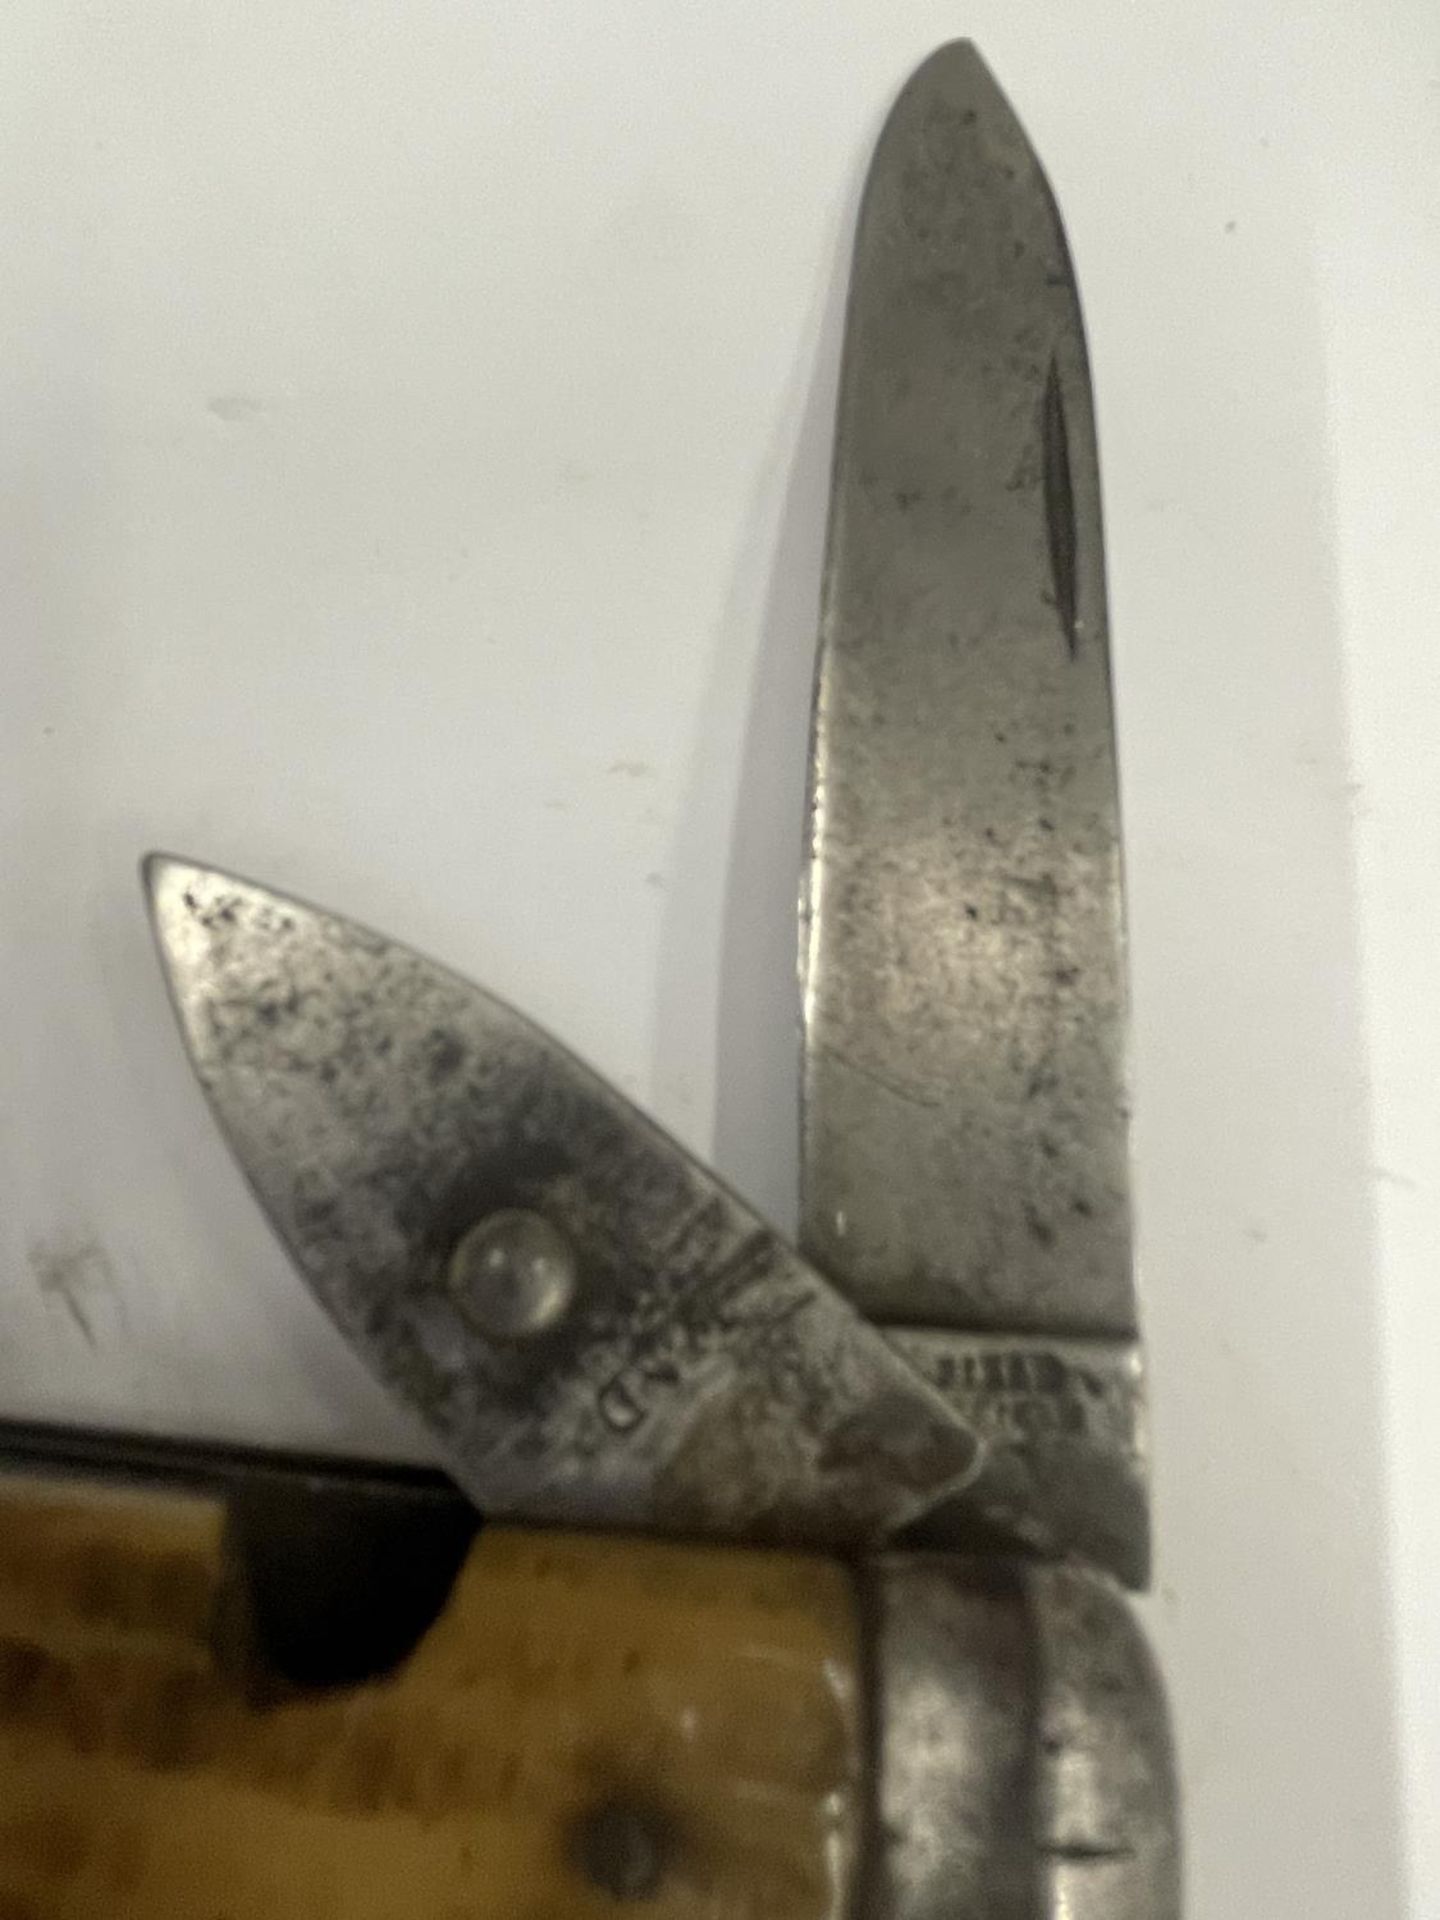 A VINTAGE SHEFFIELD POCKET KNIFE INDISTINCT MAKER - Image 2 of 3